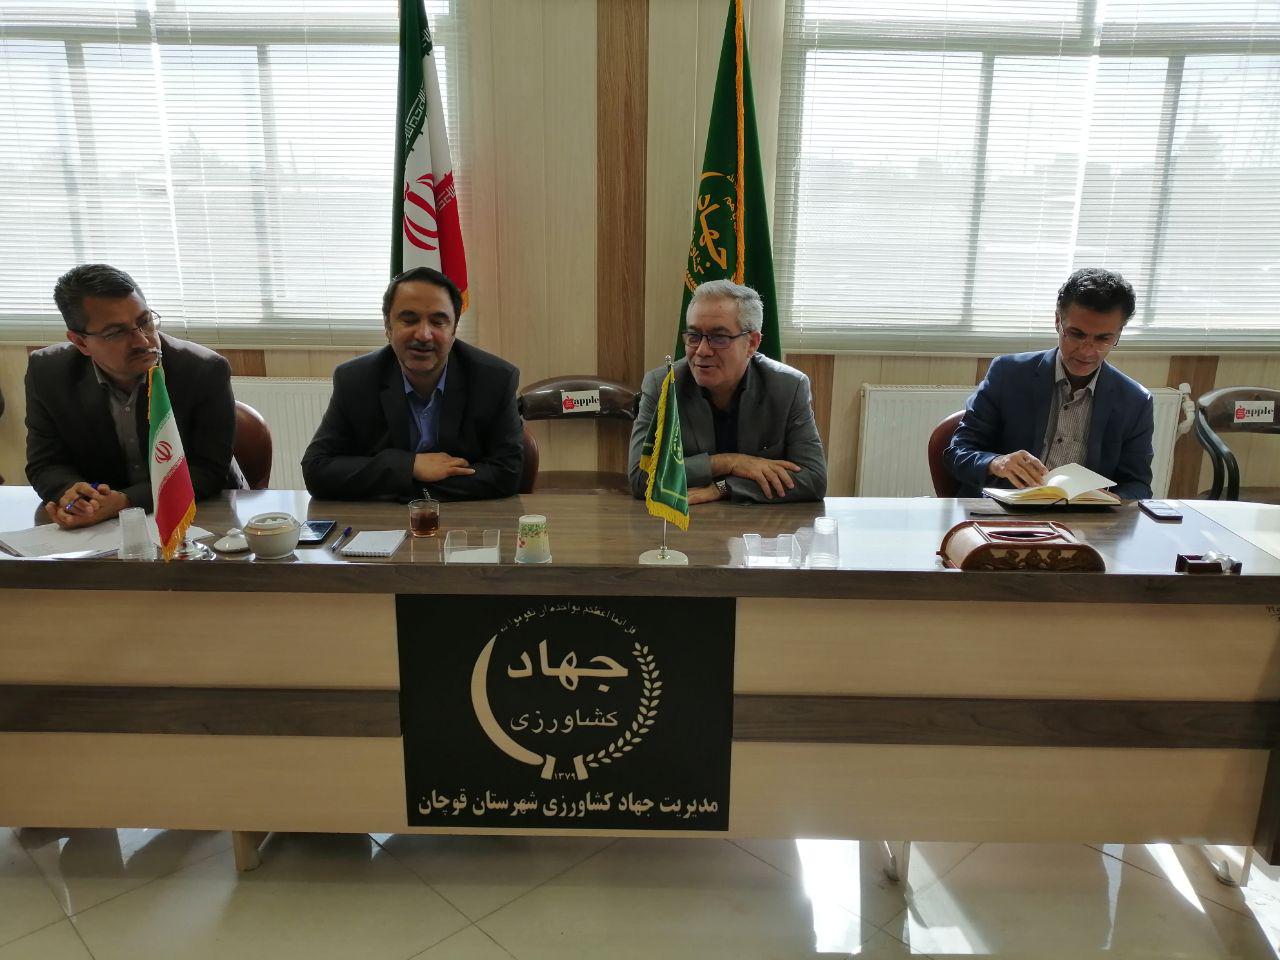 جلسه توجیهی پروژه ملی امنیت غذایی (ایران ایکاردا) در قوچان برگزار شد